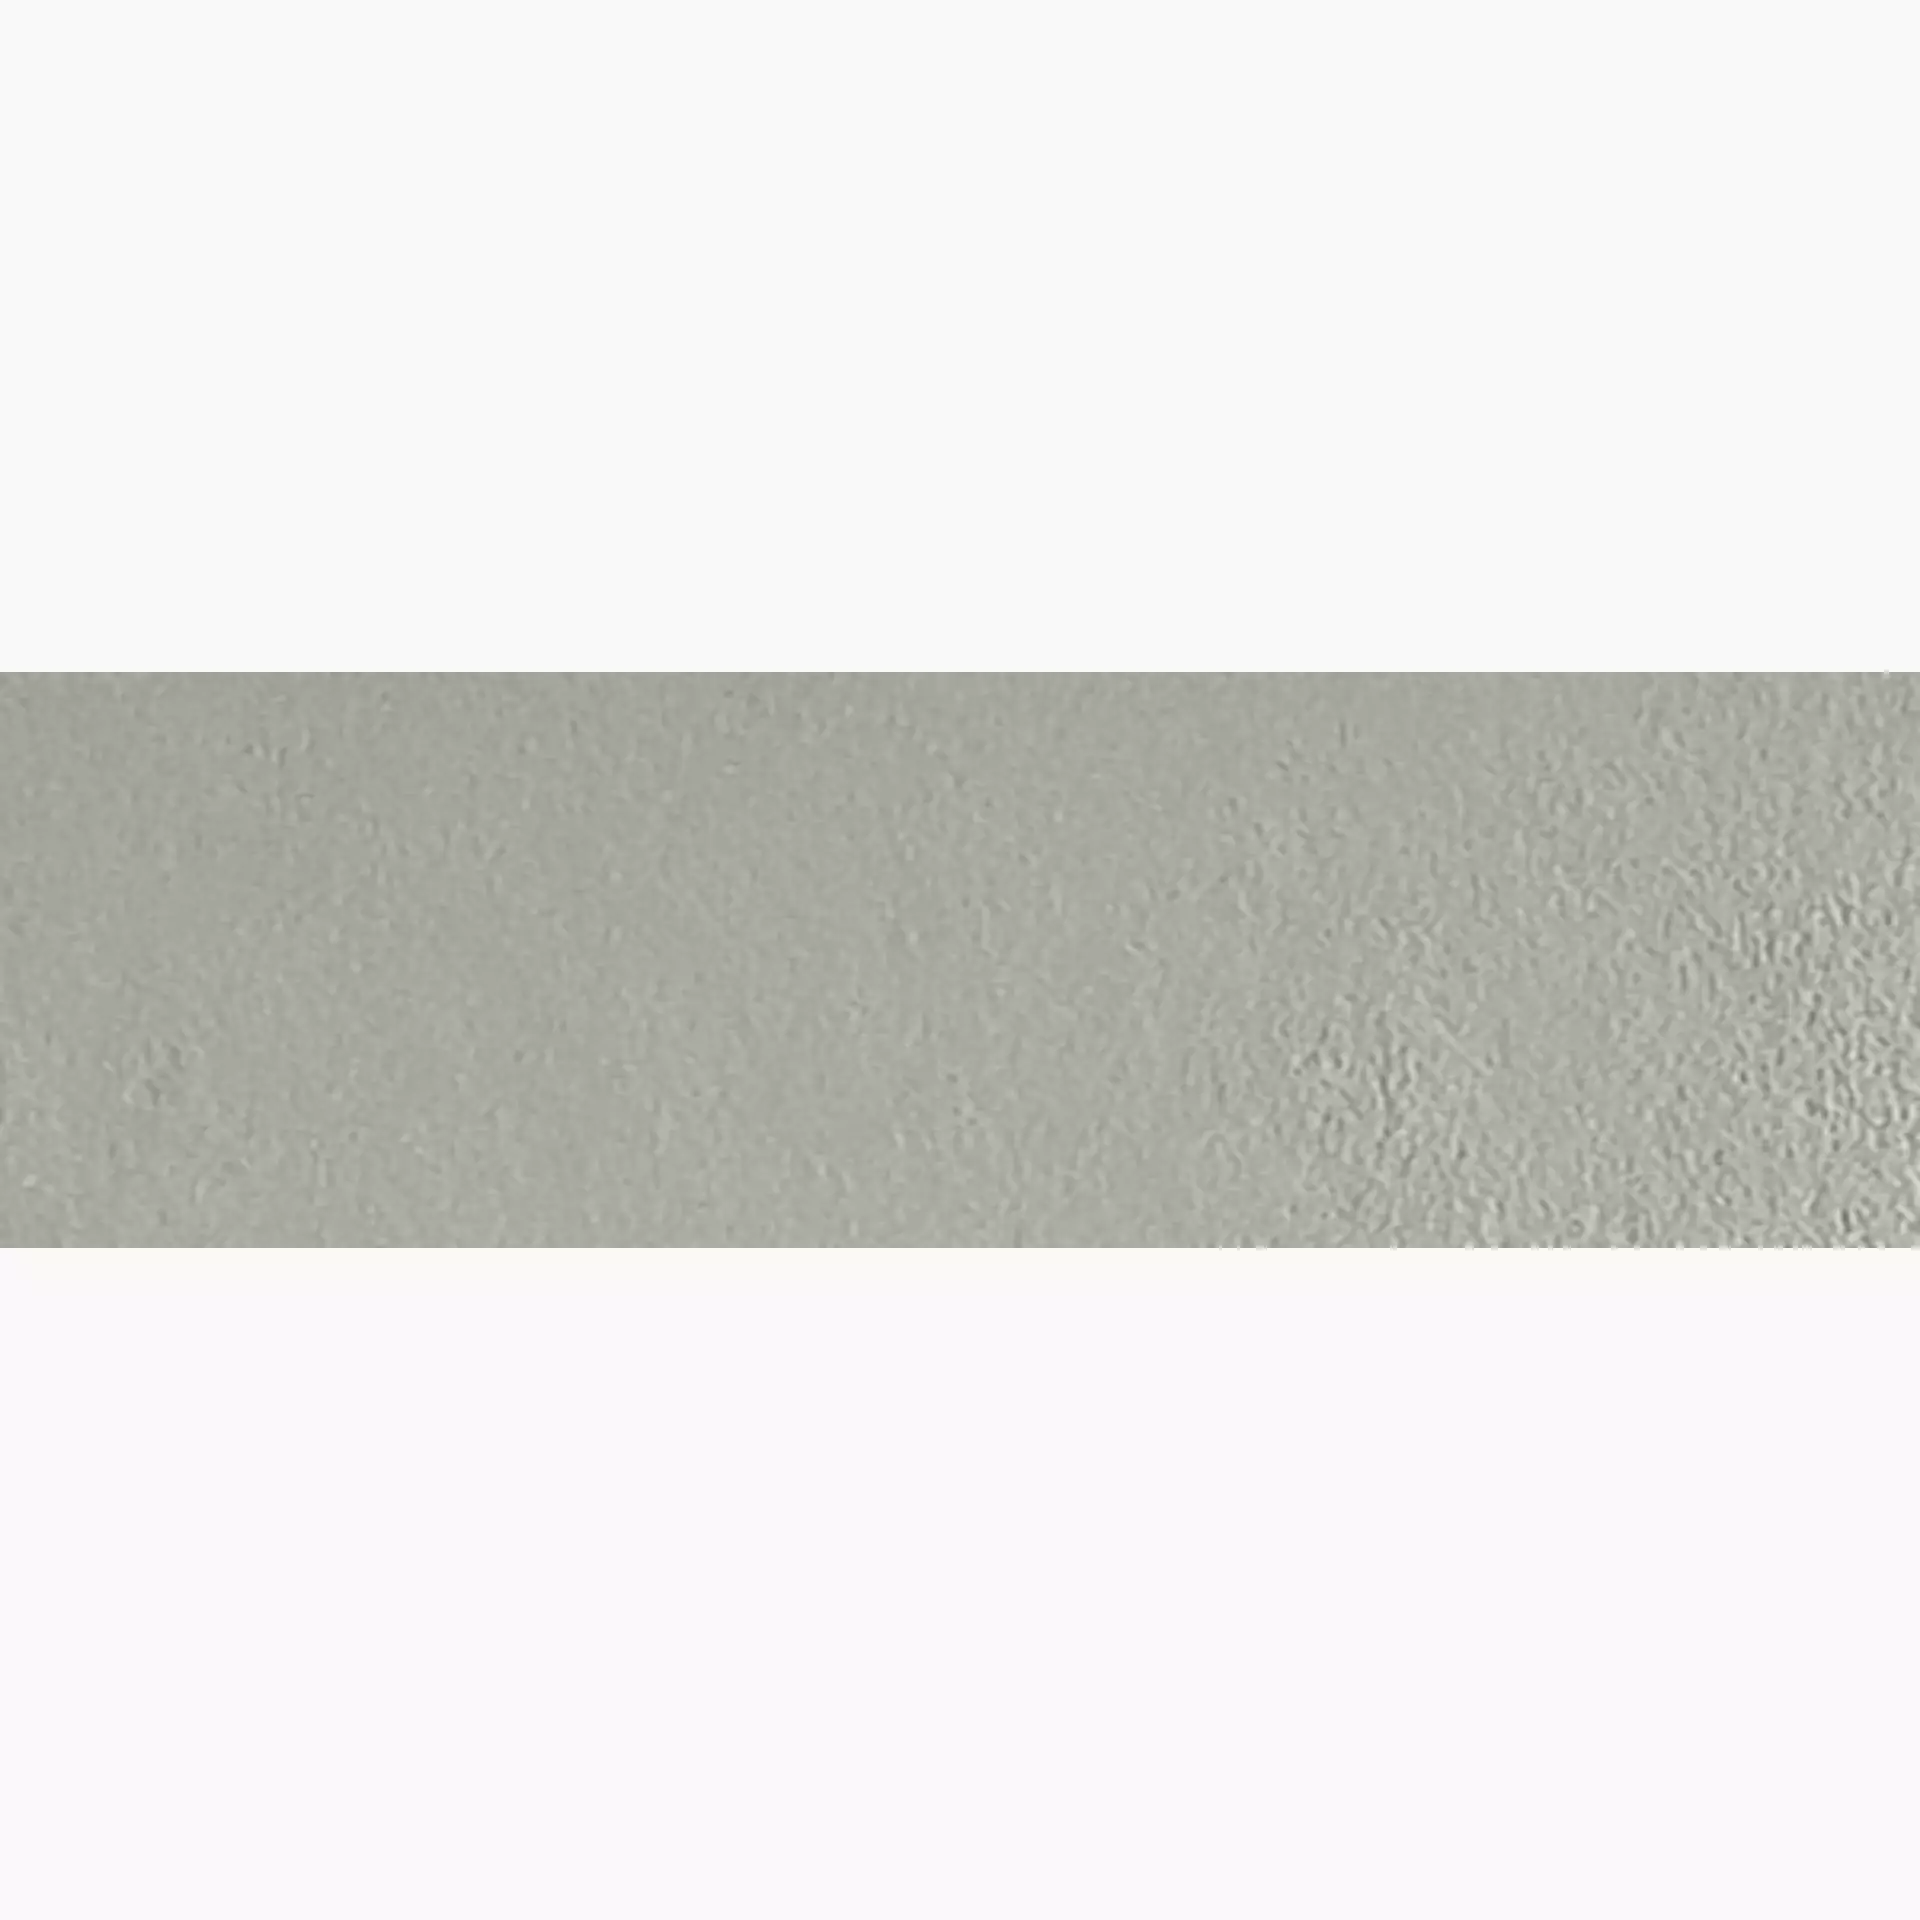 Gigacer Argilla Vetiver Material Decor Plate PO930PLAVETIVER 9x30cm 6mm